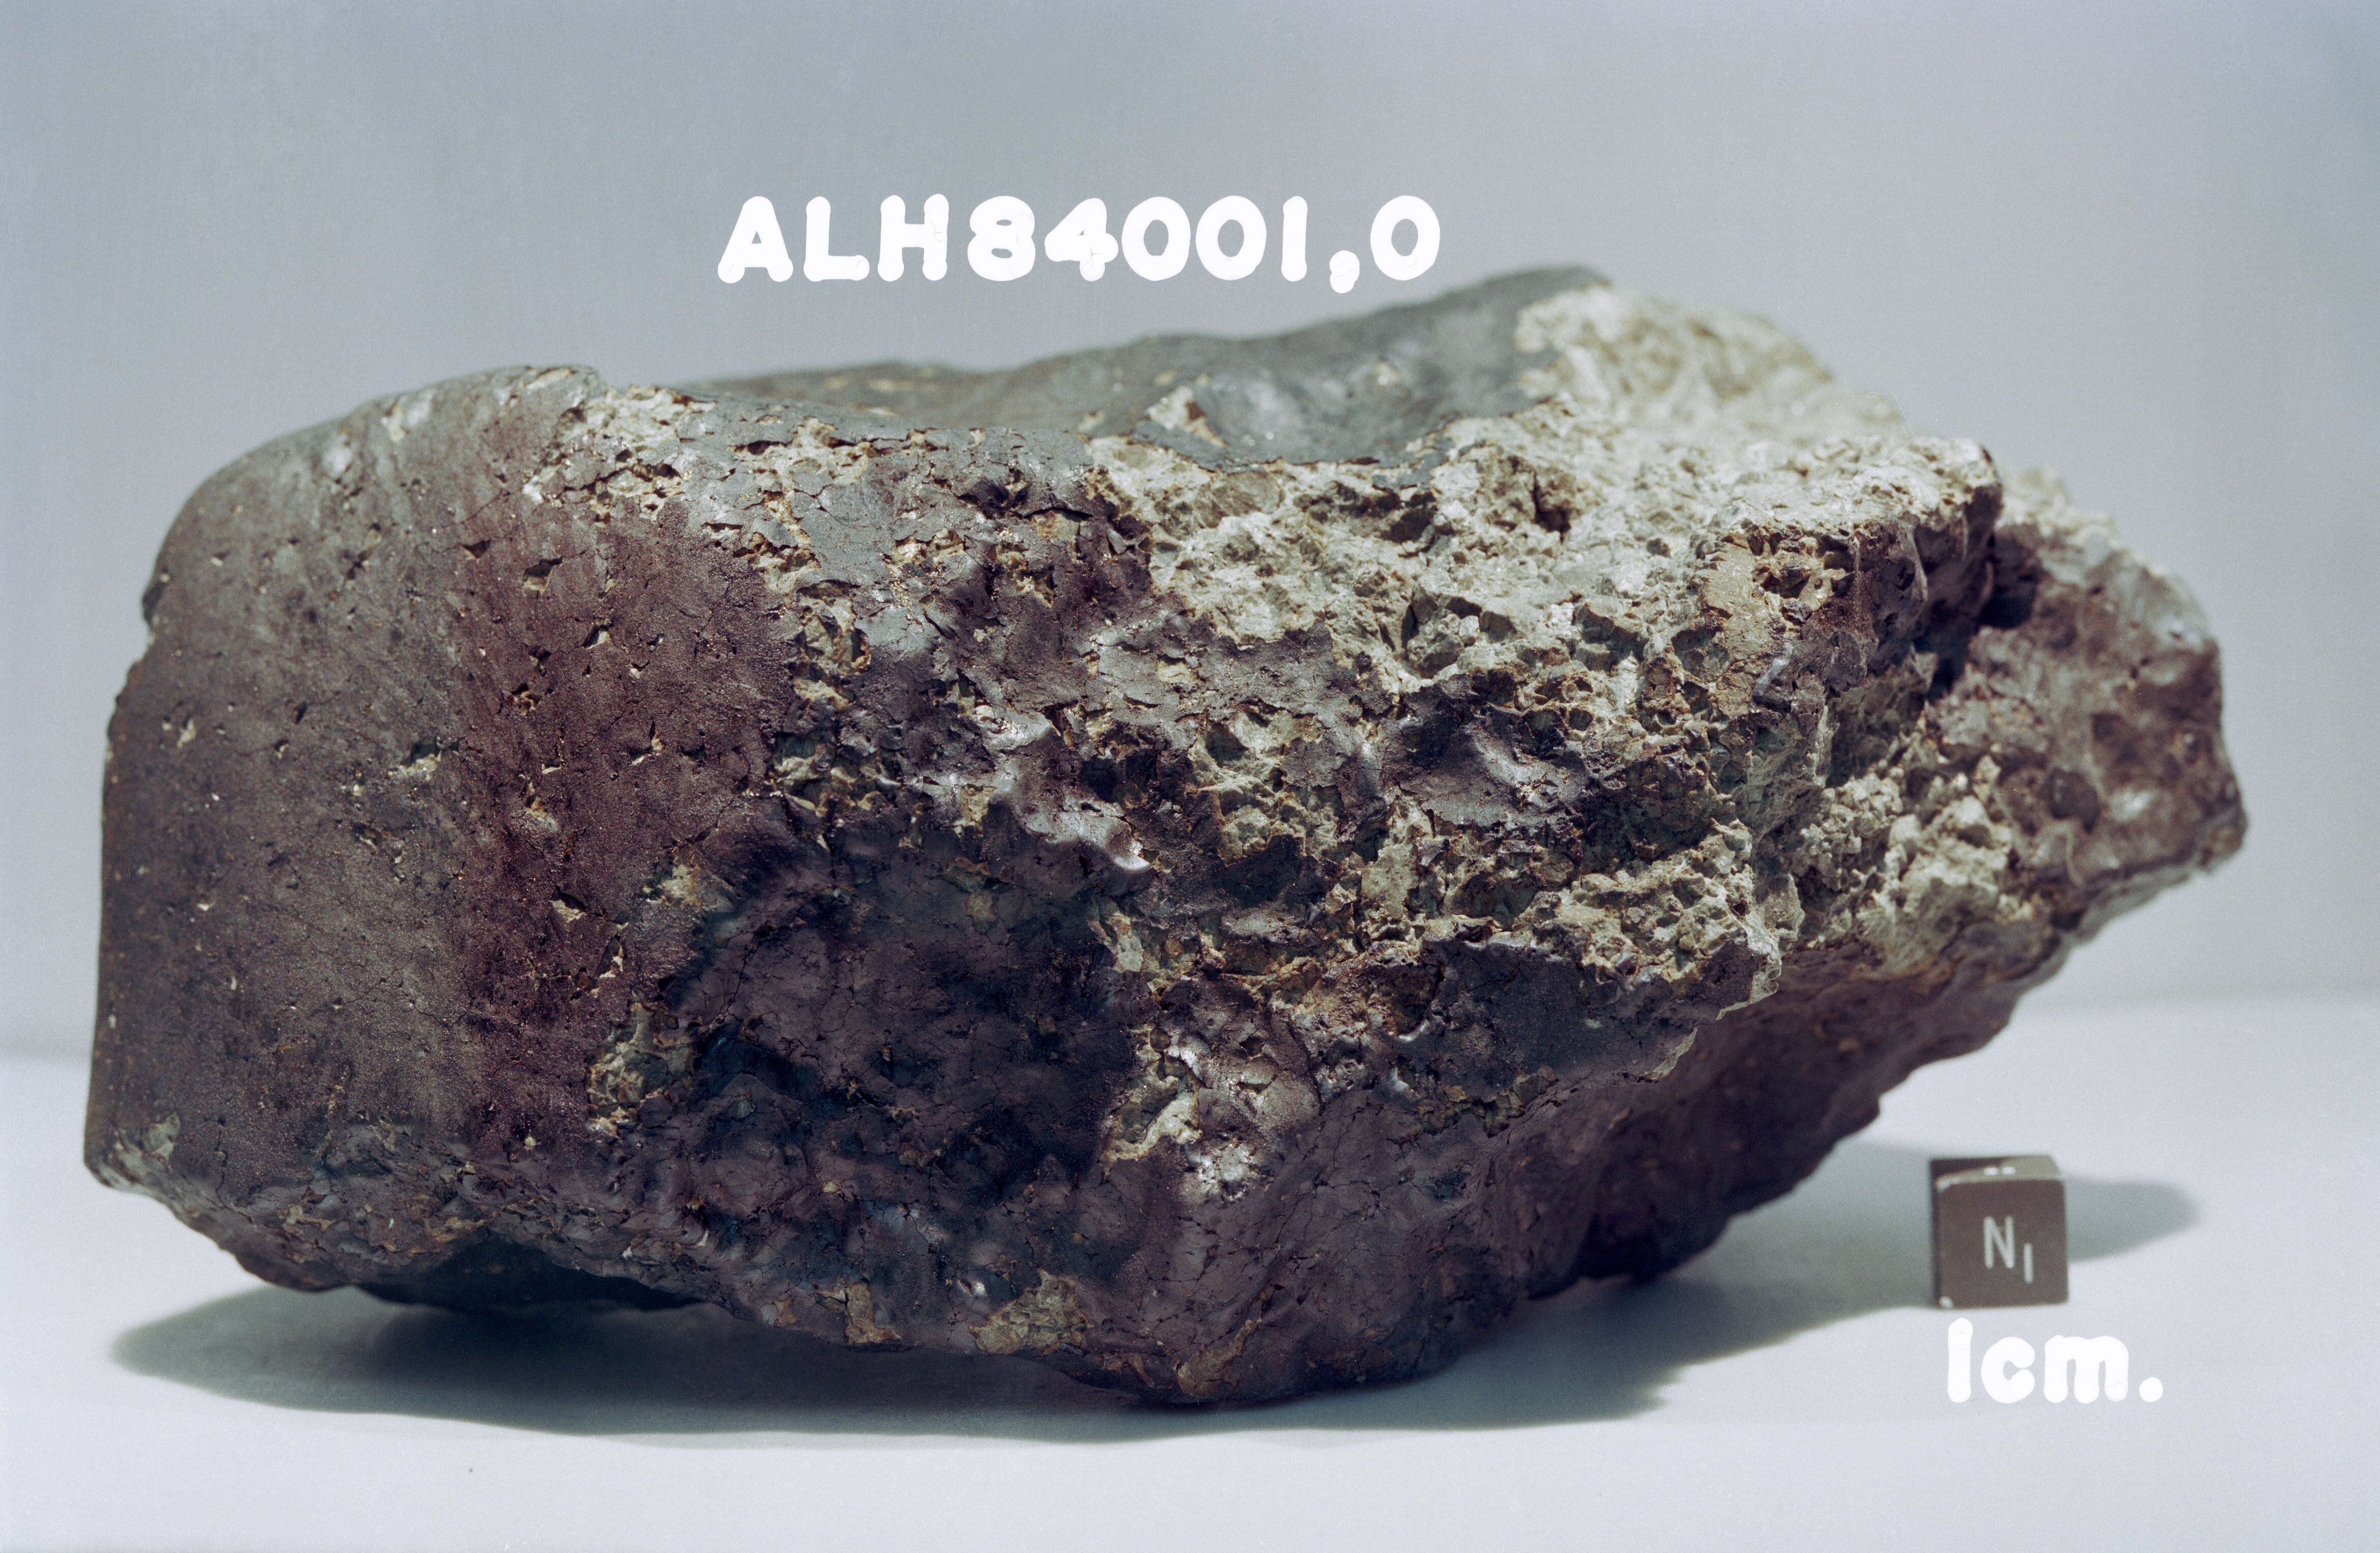 EL meteorito ALH84001, en el que se pensó que se habían encontrado indicios de vida marciana